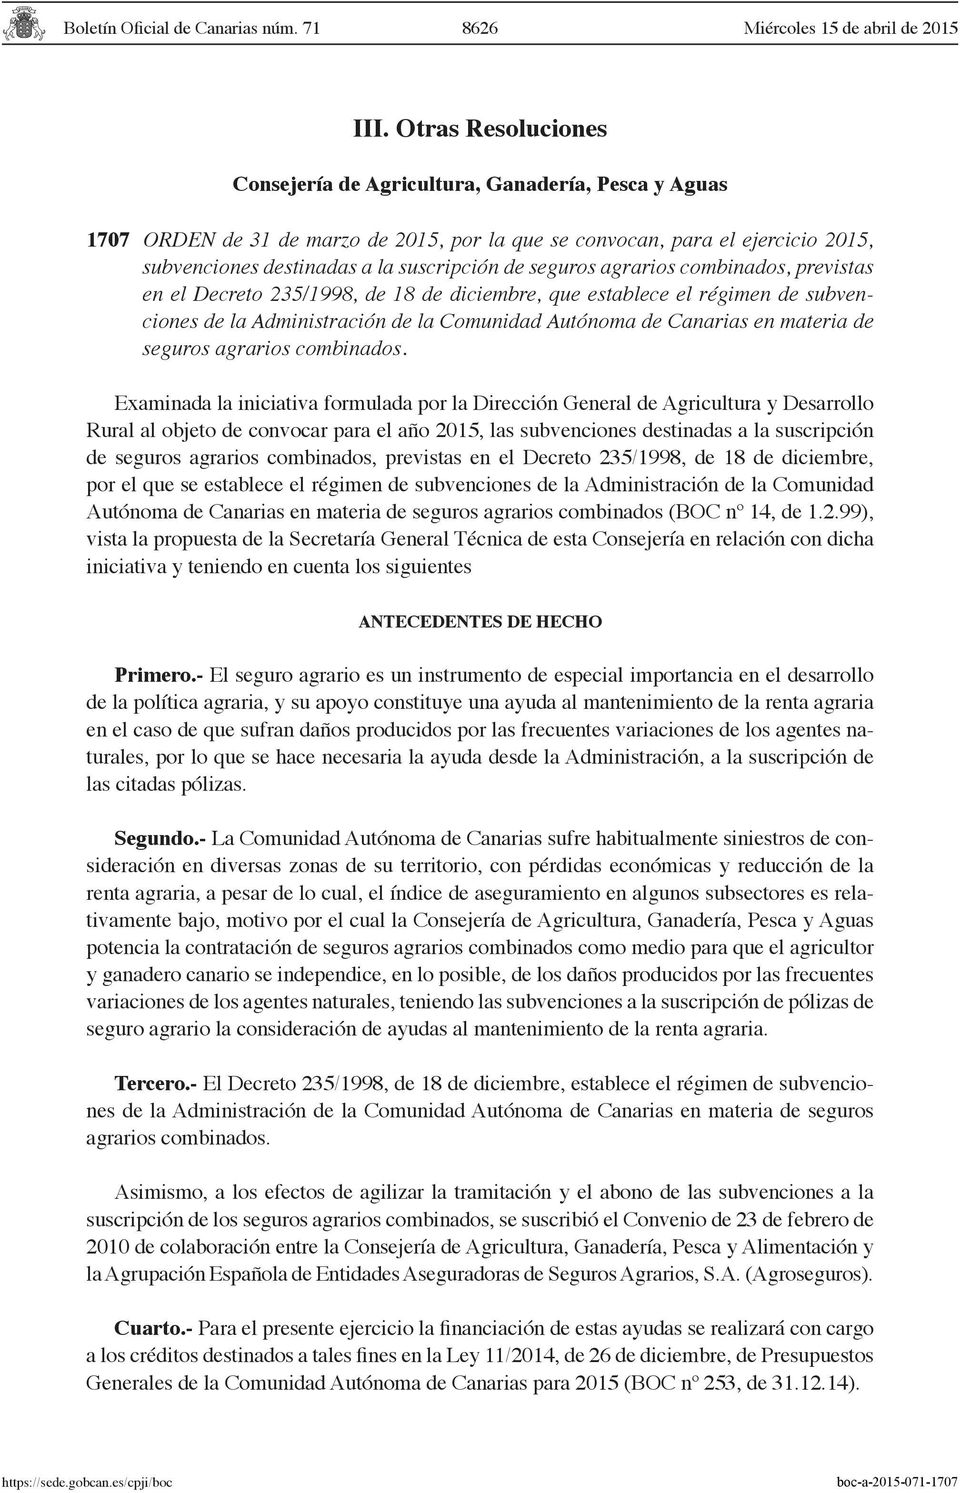 seguros agrarios combinados, previstas en el Decreto 235/1998, de 18 de diciembre, que establece el régimen de subvenciones de la Administración de la Comunidad Autónoma de Canarias en materia de